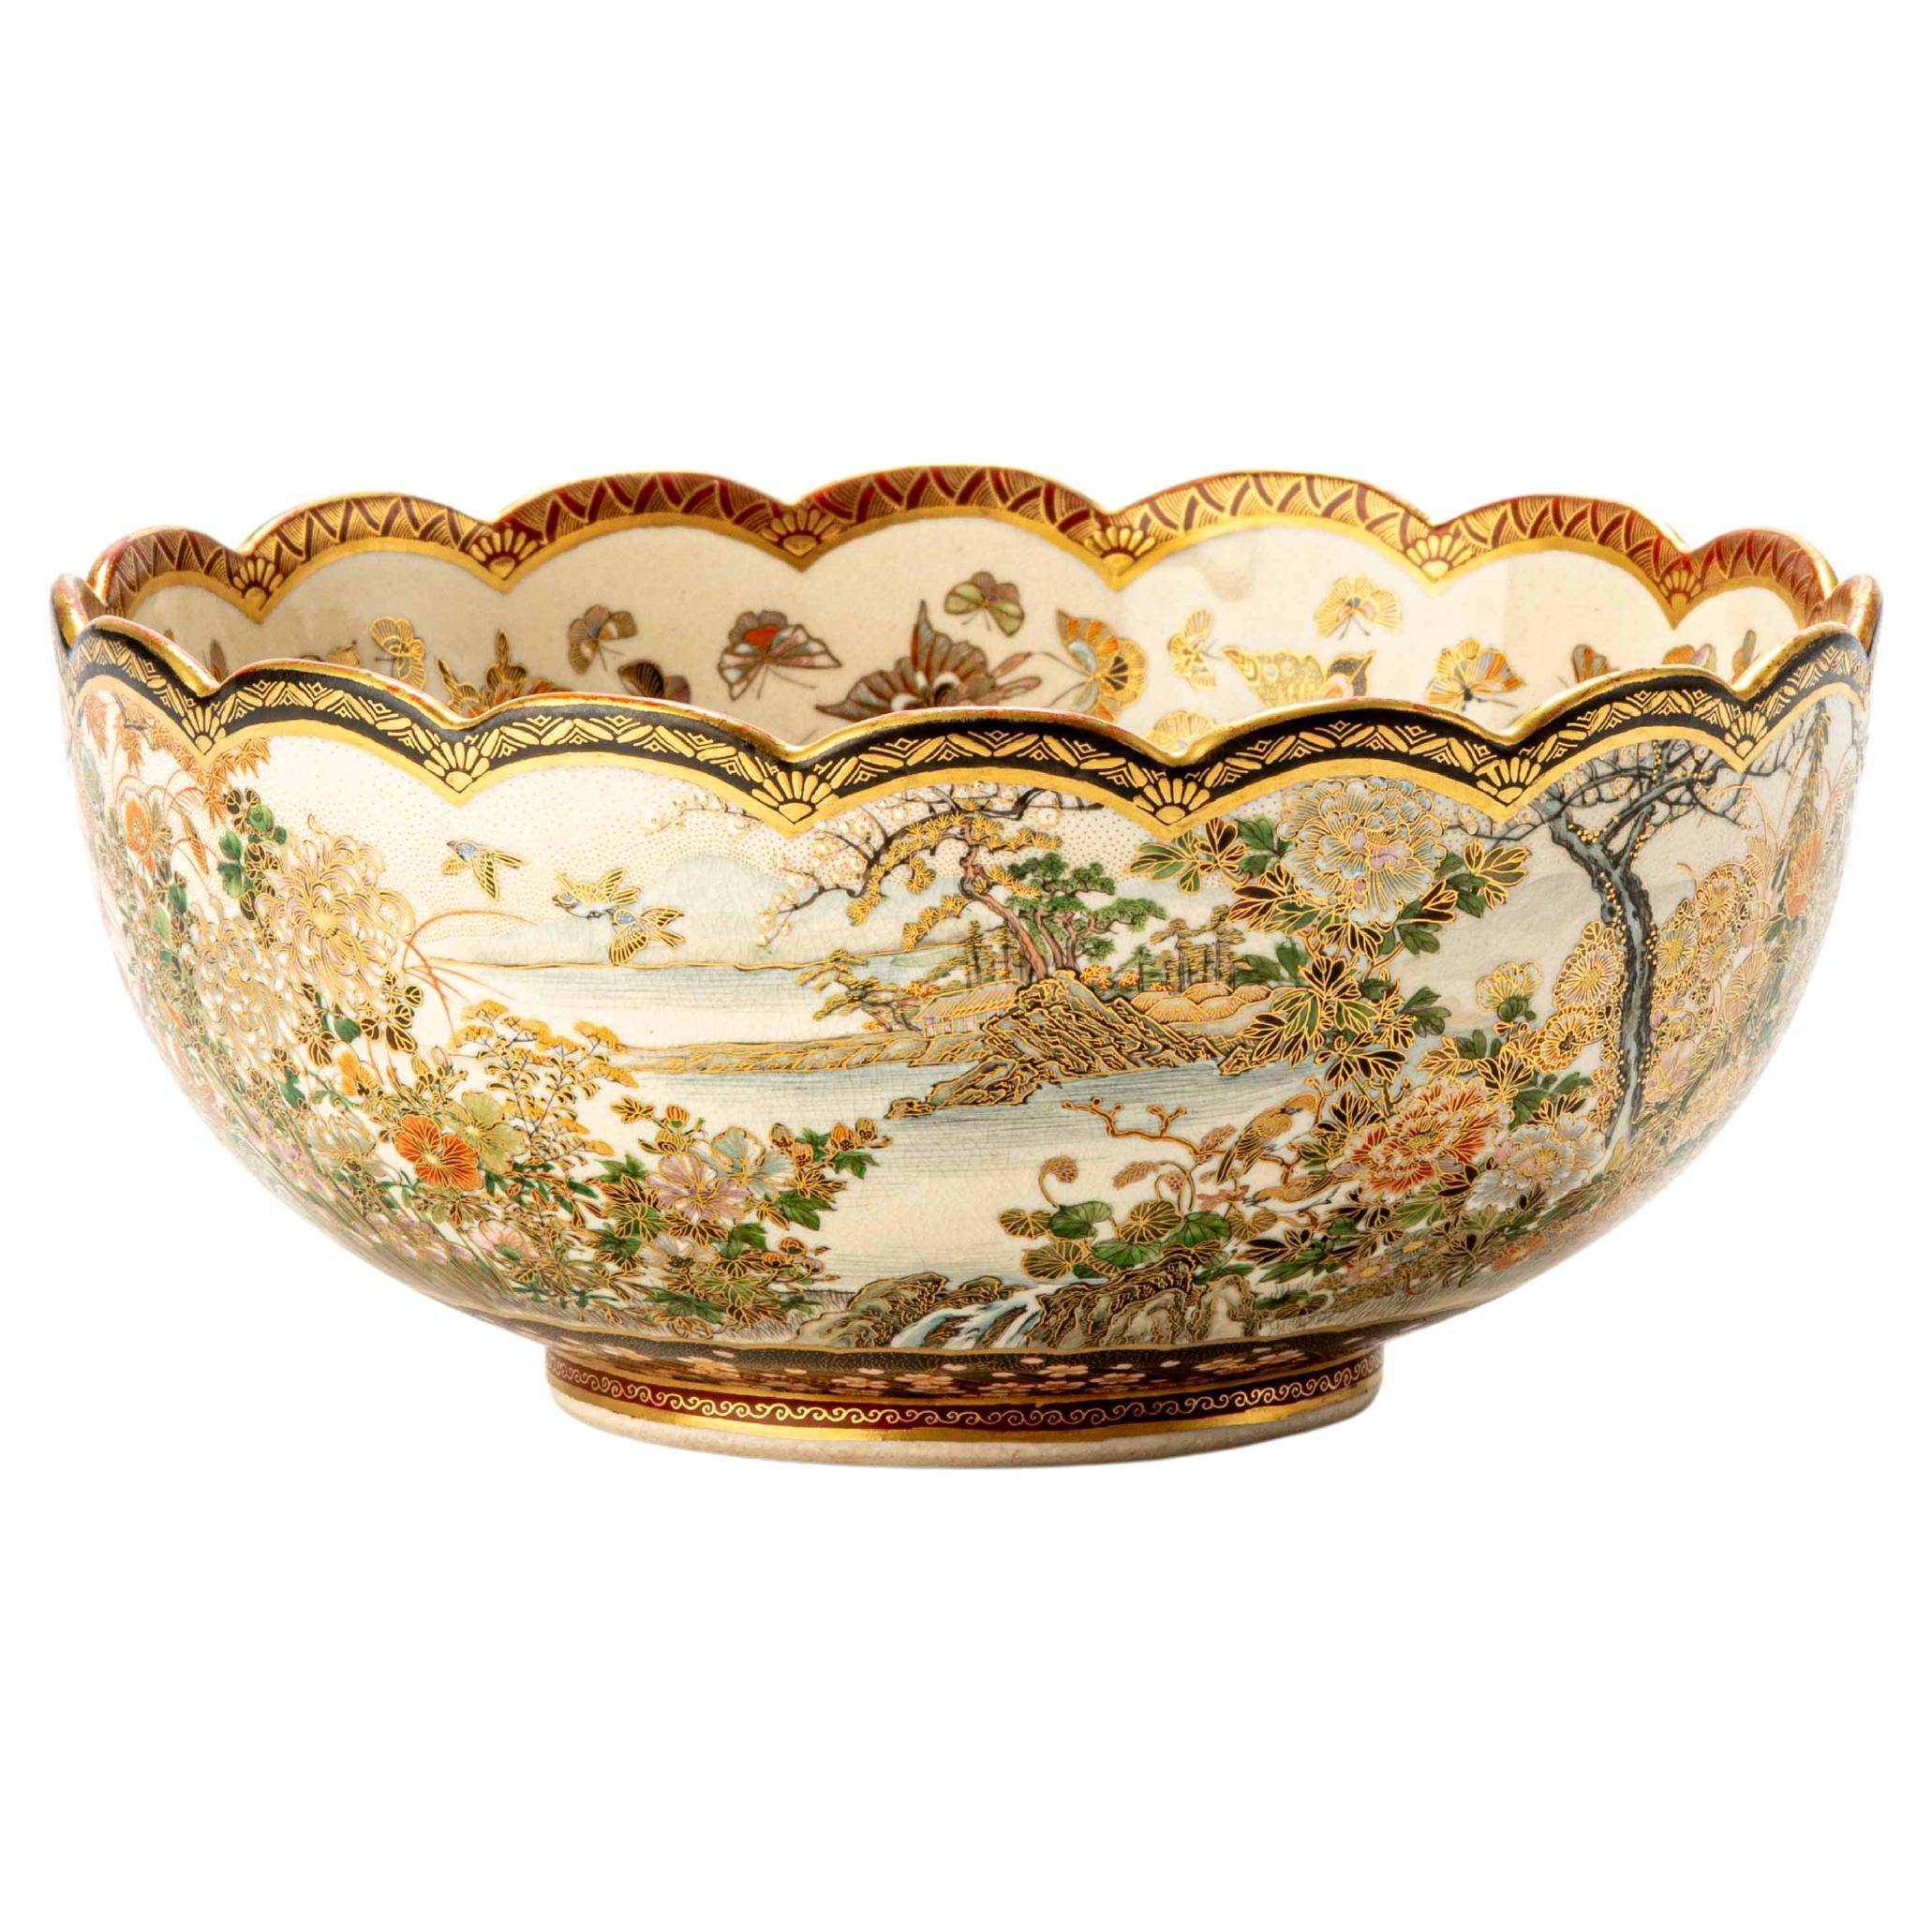 Satsuma ceramic lobed bowl, signed Juzan under the base